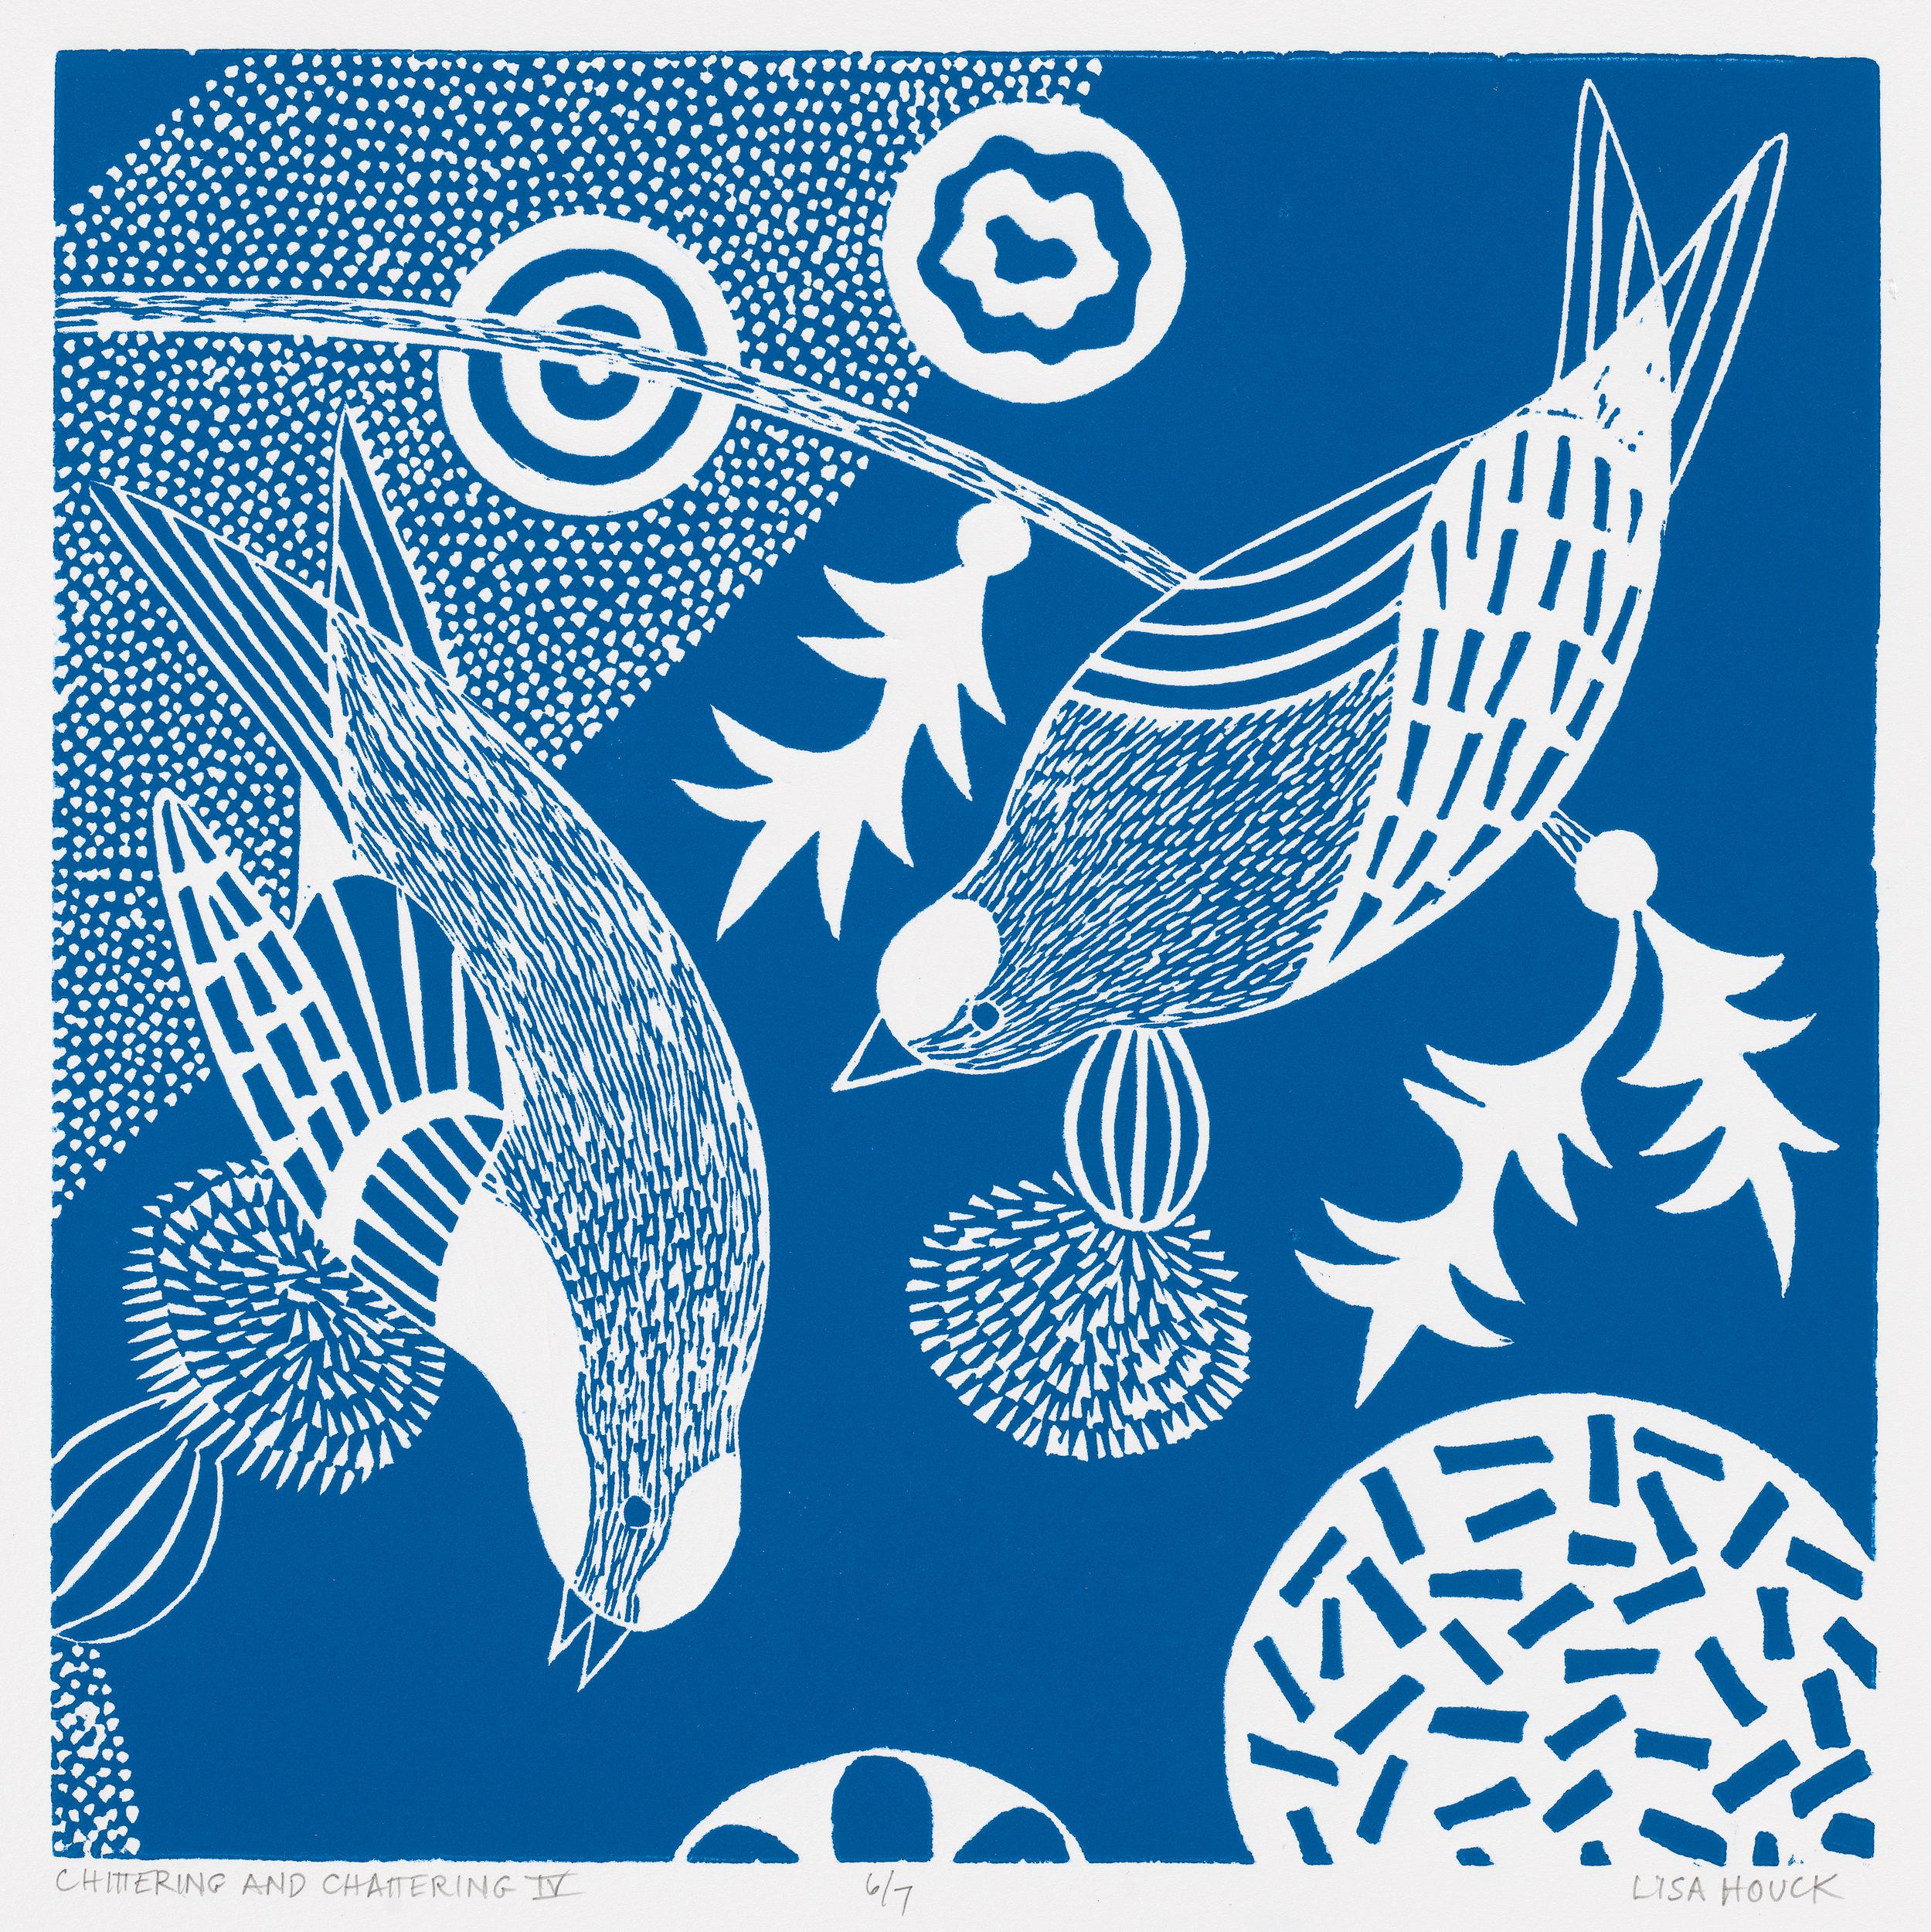 Lisa Houck Animal Print – ""Chittering & Chattering IV"" Volks inspirierte Vogelserie im Linolschnitt in Blau und Weiß